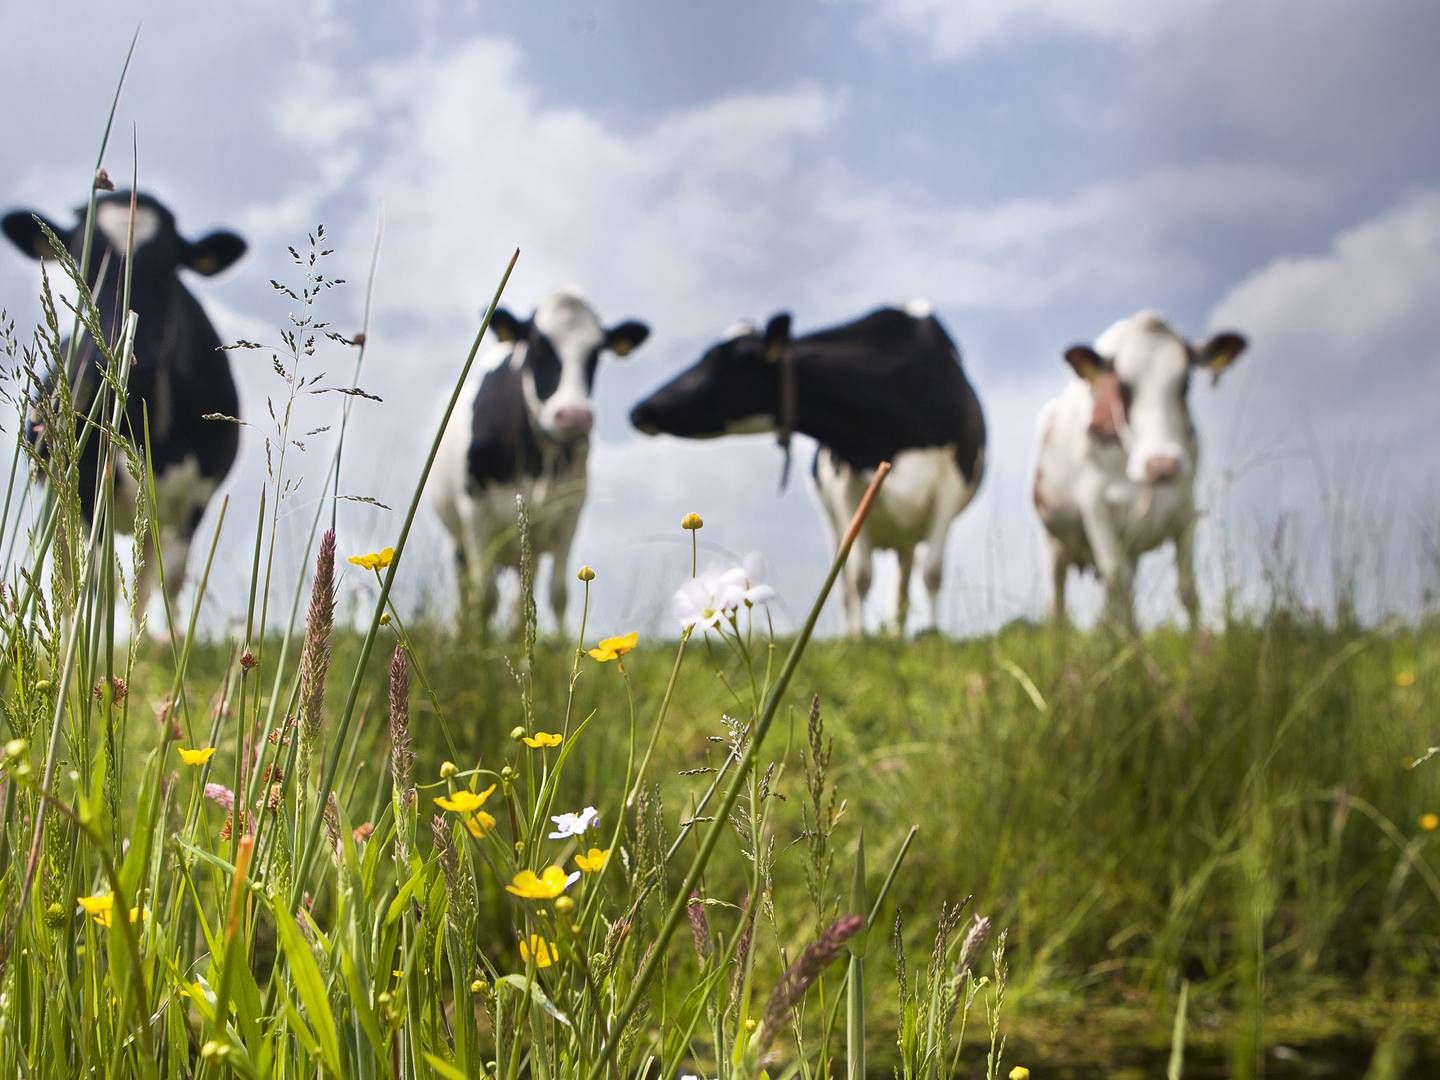 Hos en af FrieslandCampinas andelshavere arbejder yngste generation på at levere plantebaserede alternativer til mælk. | Foto: FrieslandCampina/ PR